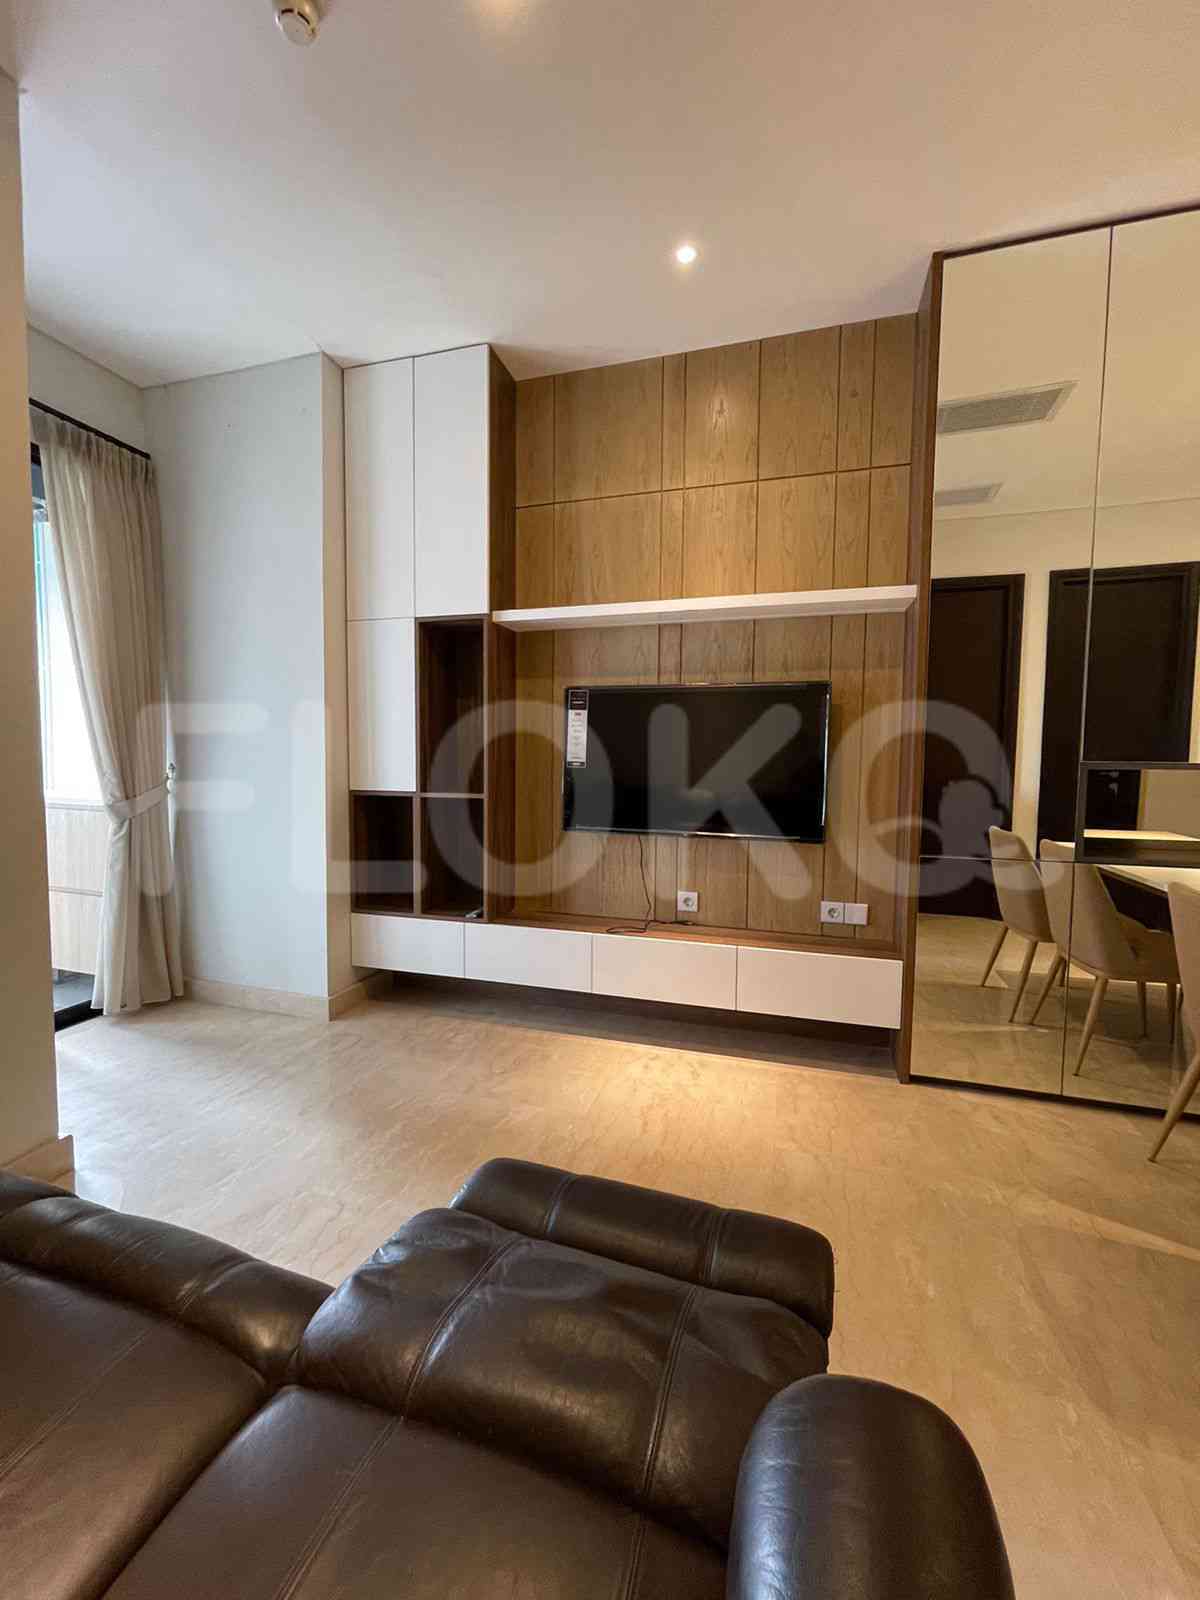 3 Bedroom on 10th Floor for Rent in Sudirman Suites Jakarta - fsuaf7 11